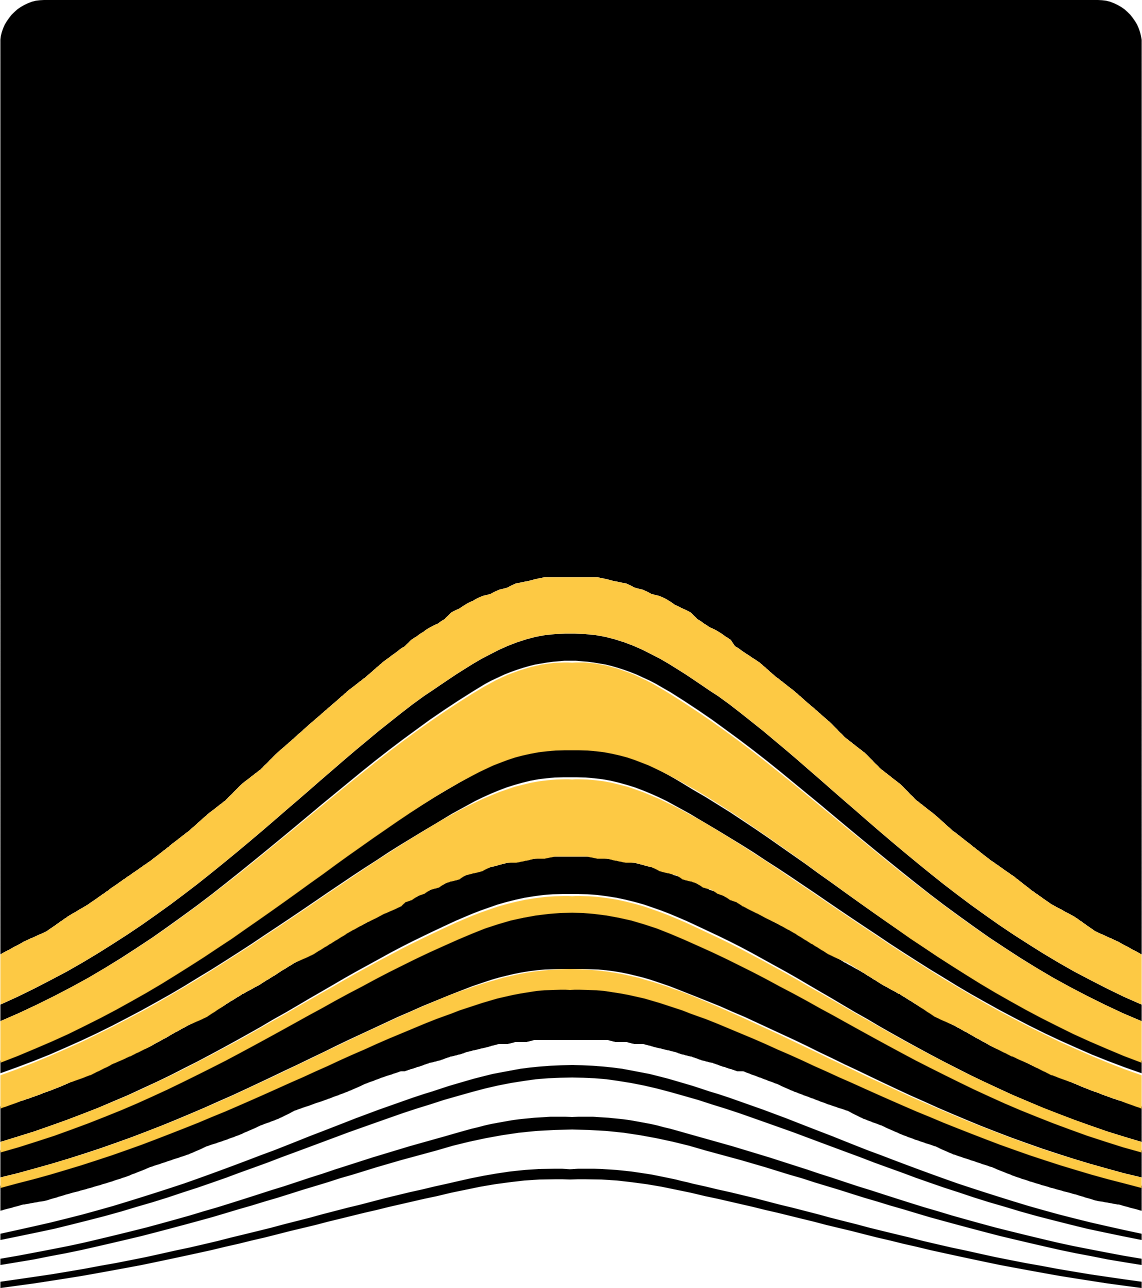 Petropavlovsk logo (PNG transparent)